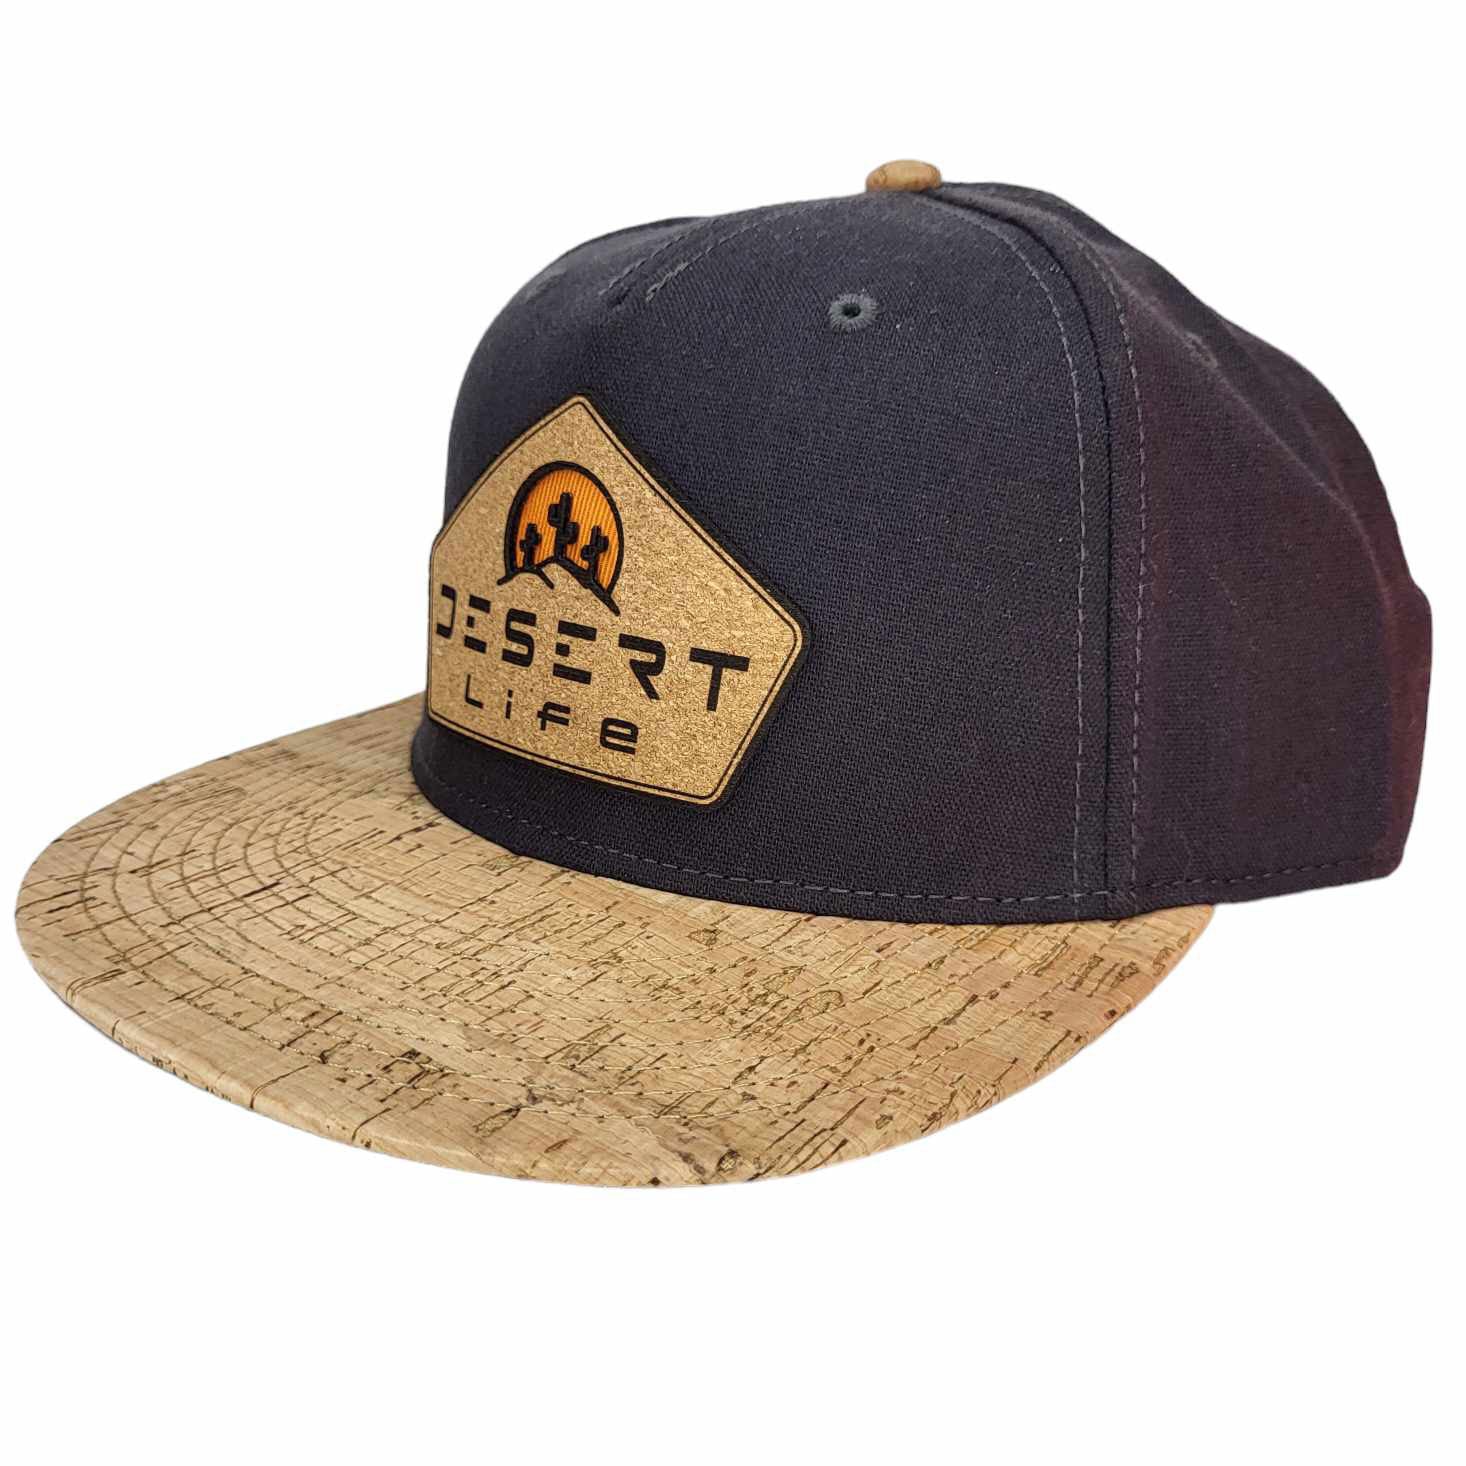 Desert Life Cork Hat